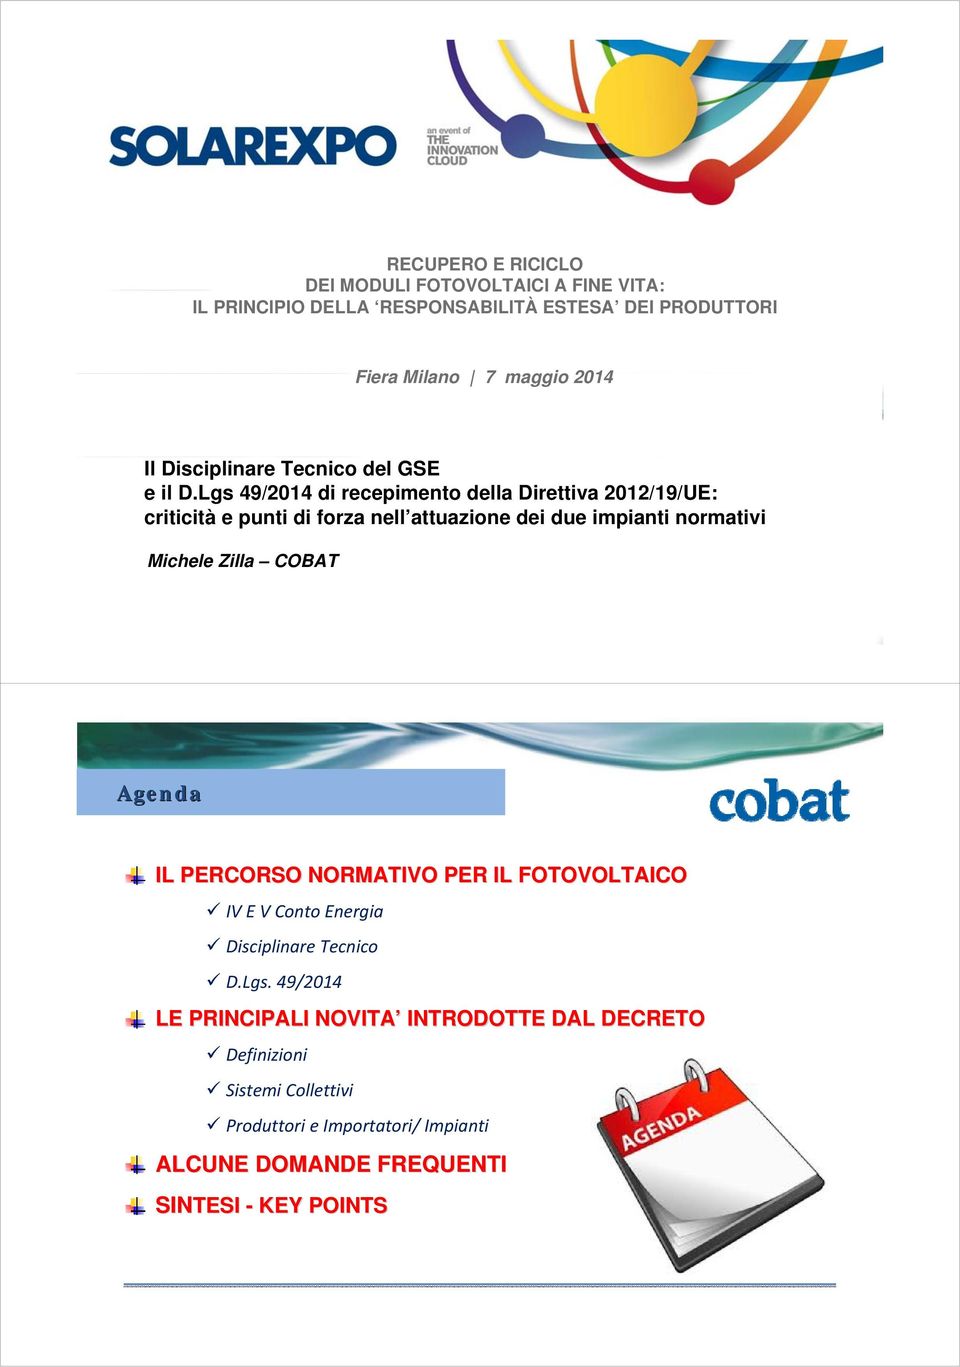 Lgs 49/2014 di recepimento della Direttiva 2012/19/UE: criticità e punti di forza nell attuazione dei due impianti normativi Michele Zilla COBAT